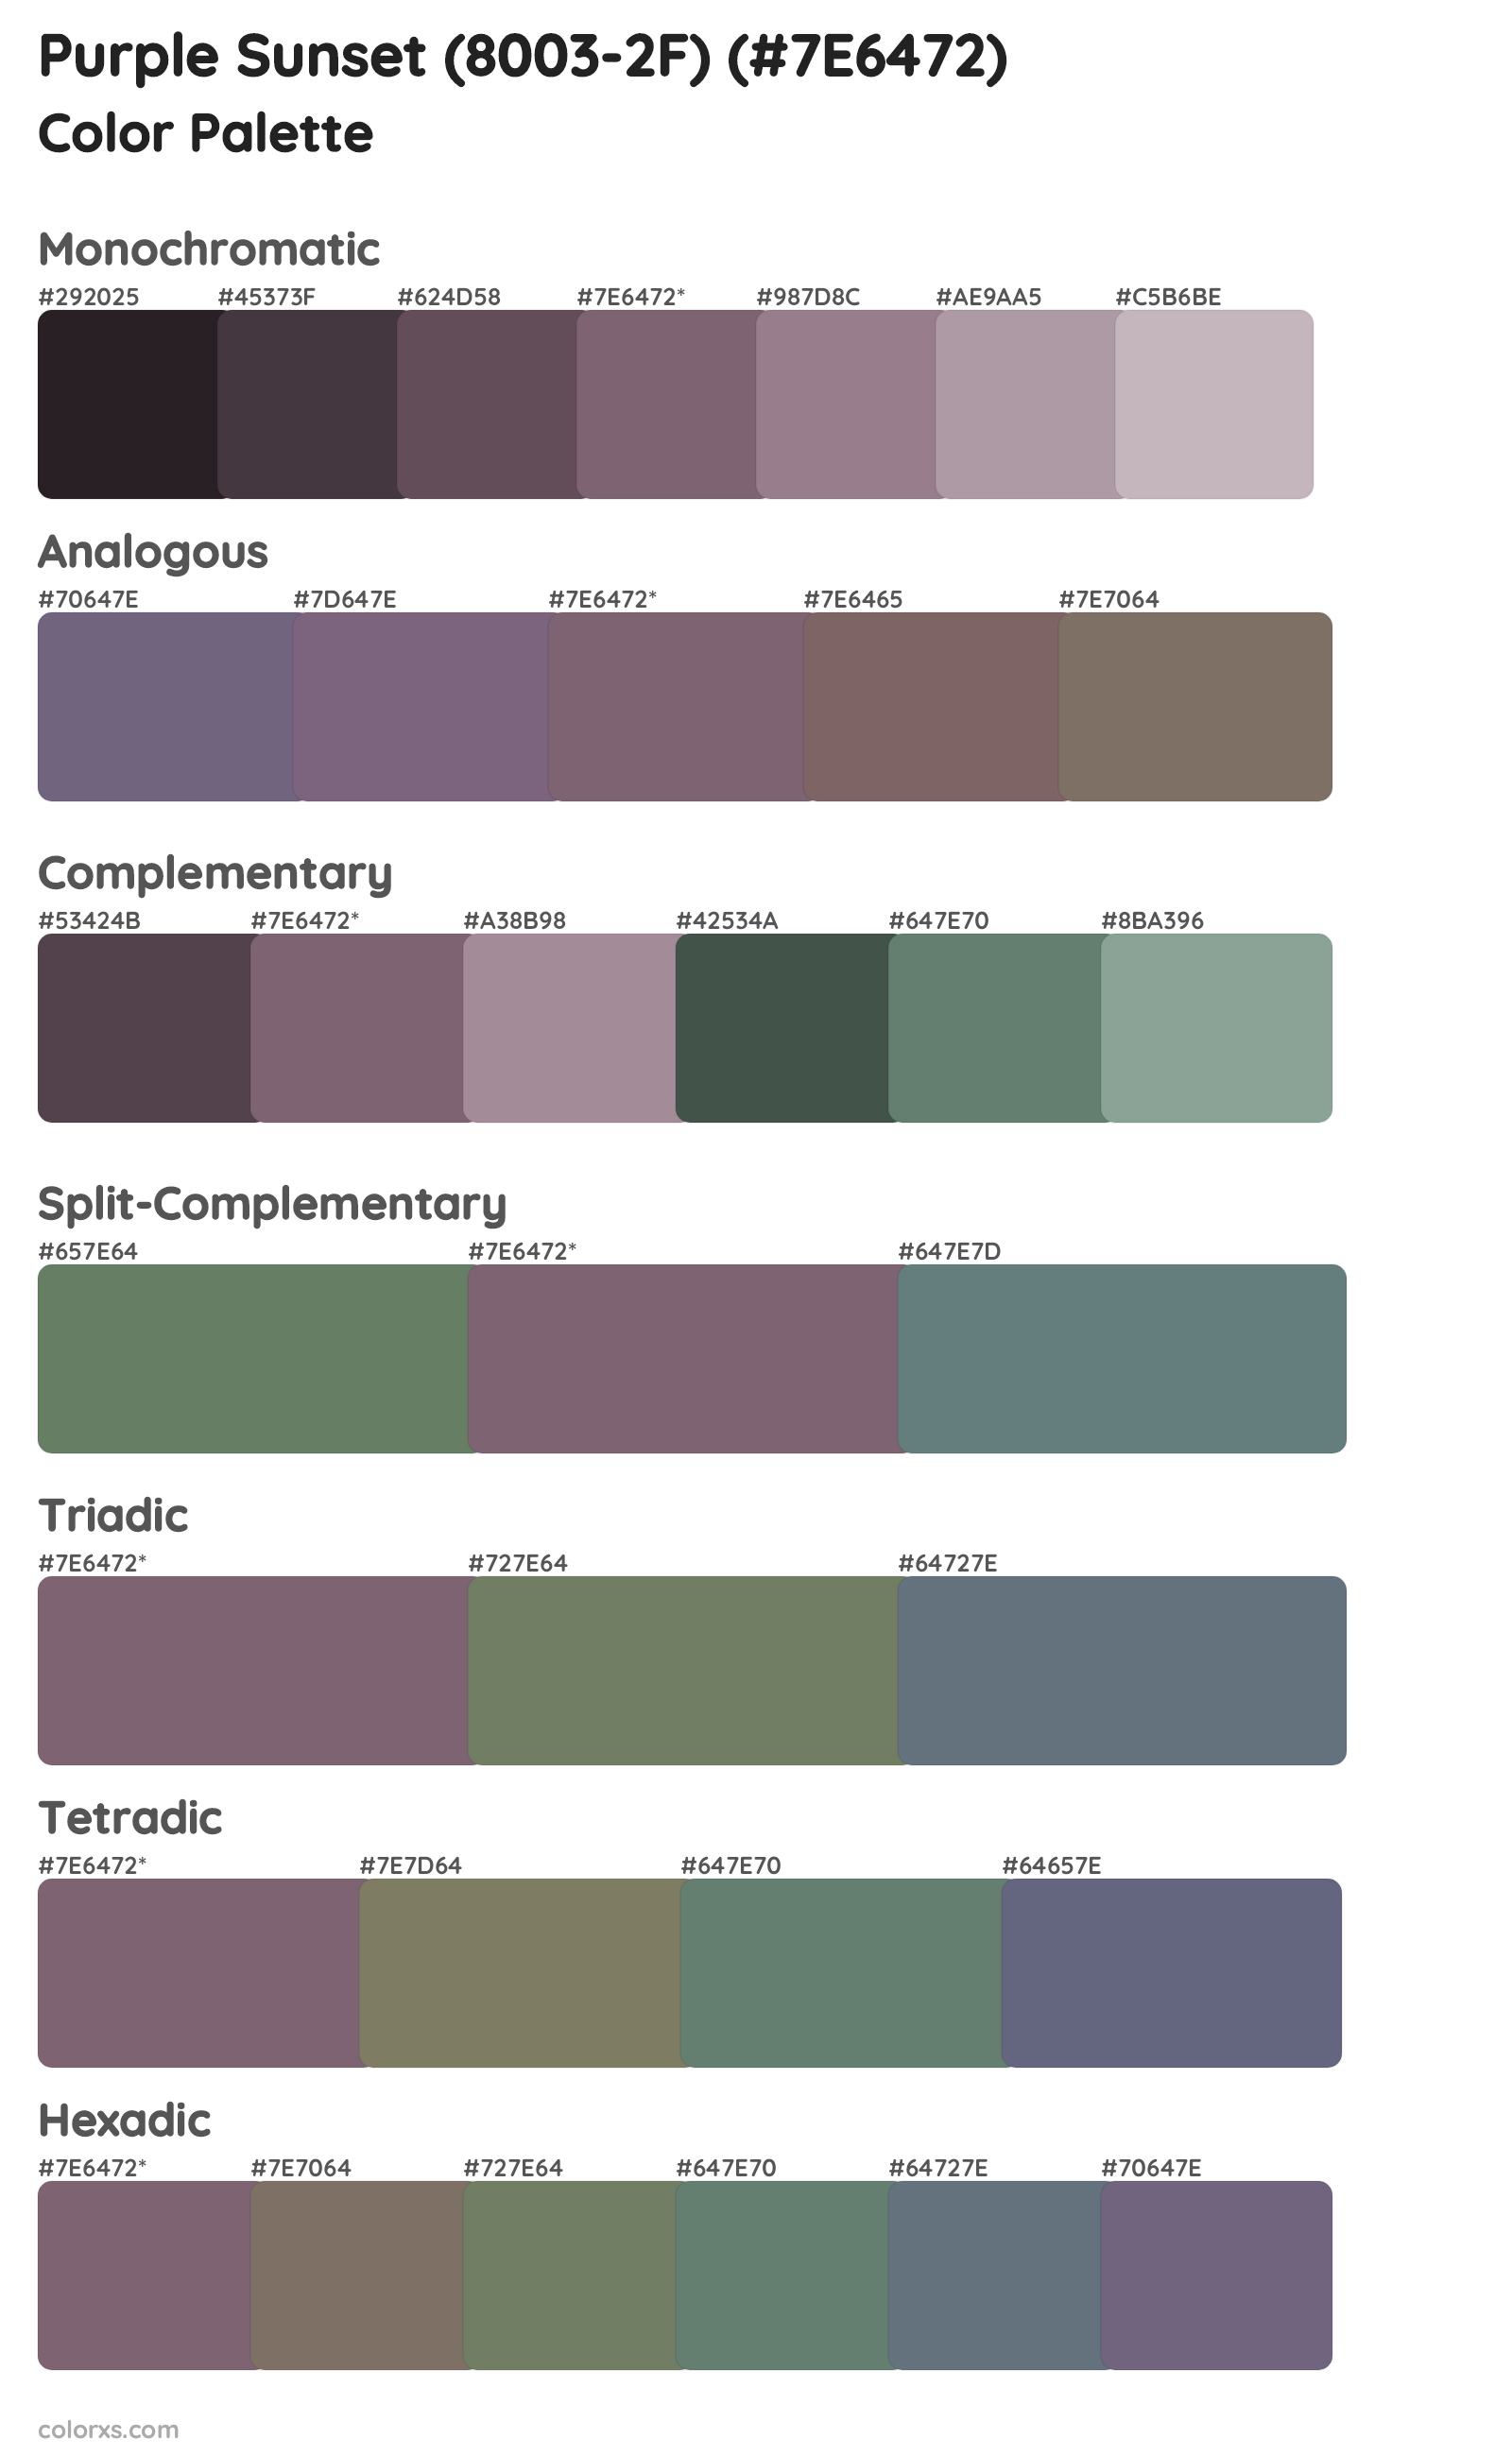 Purple Sunset (8003-2F) Color Scheme Palettes